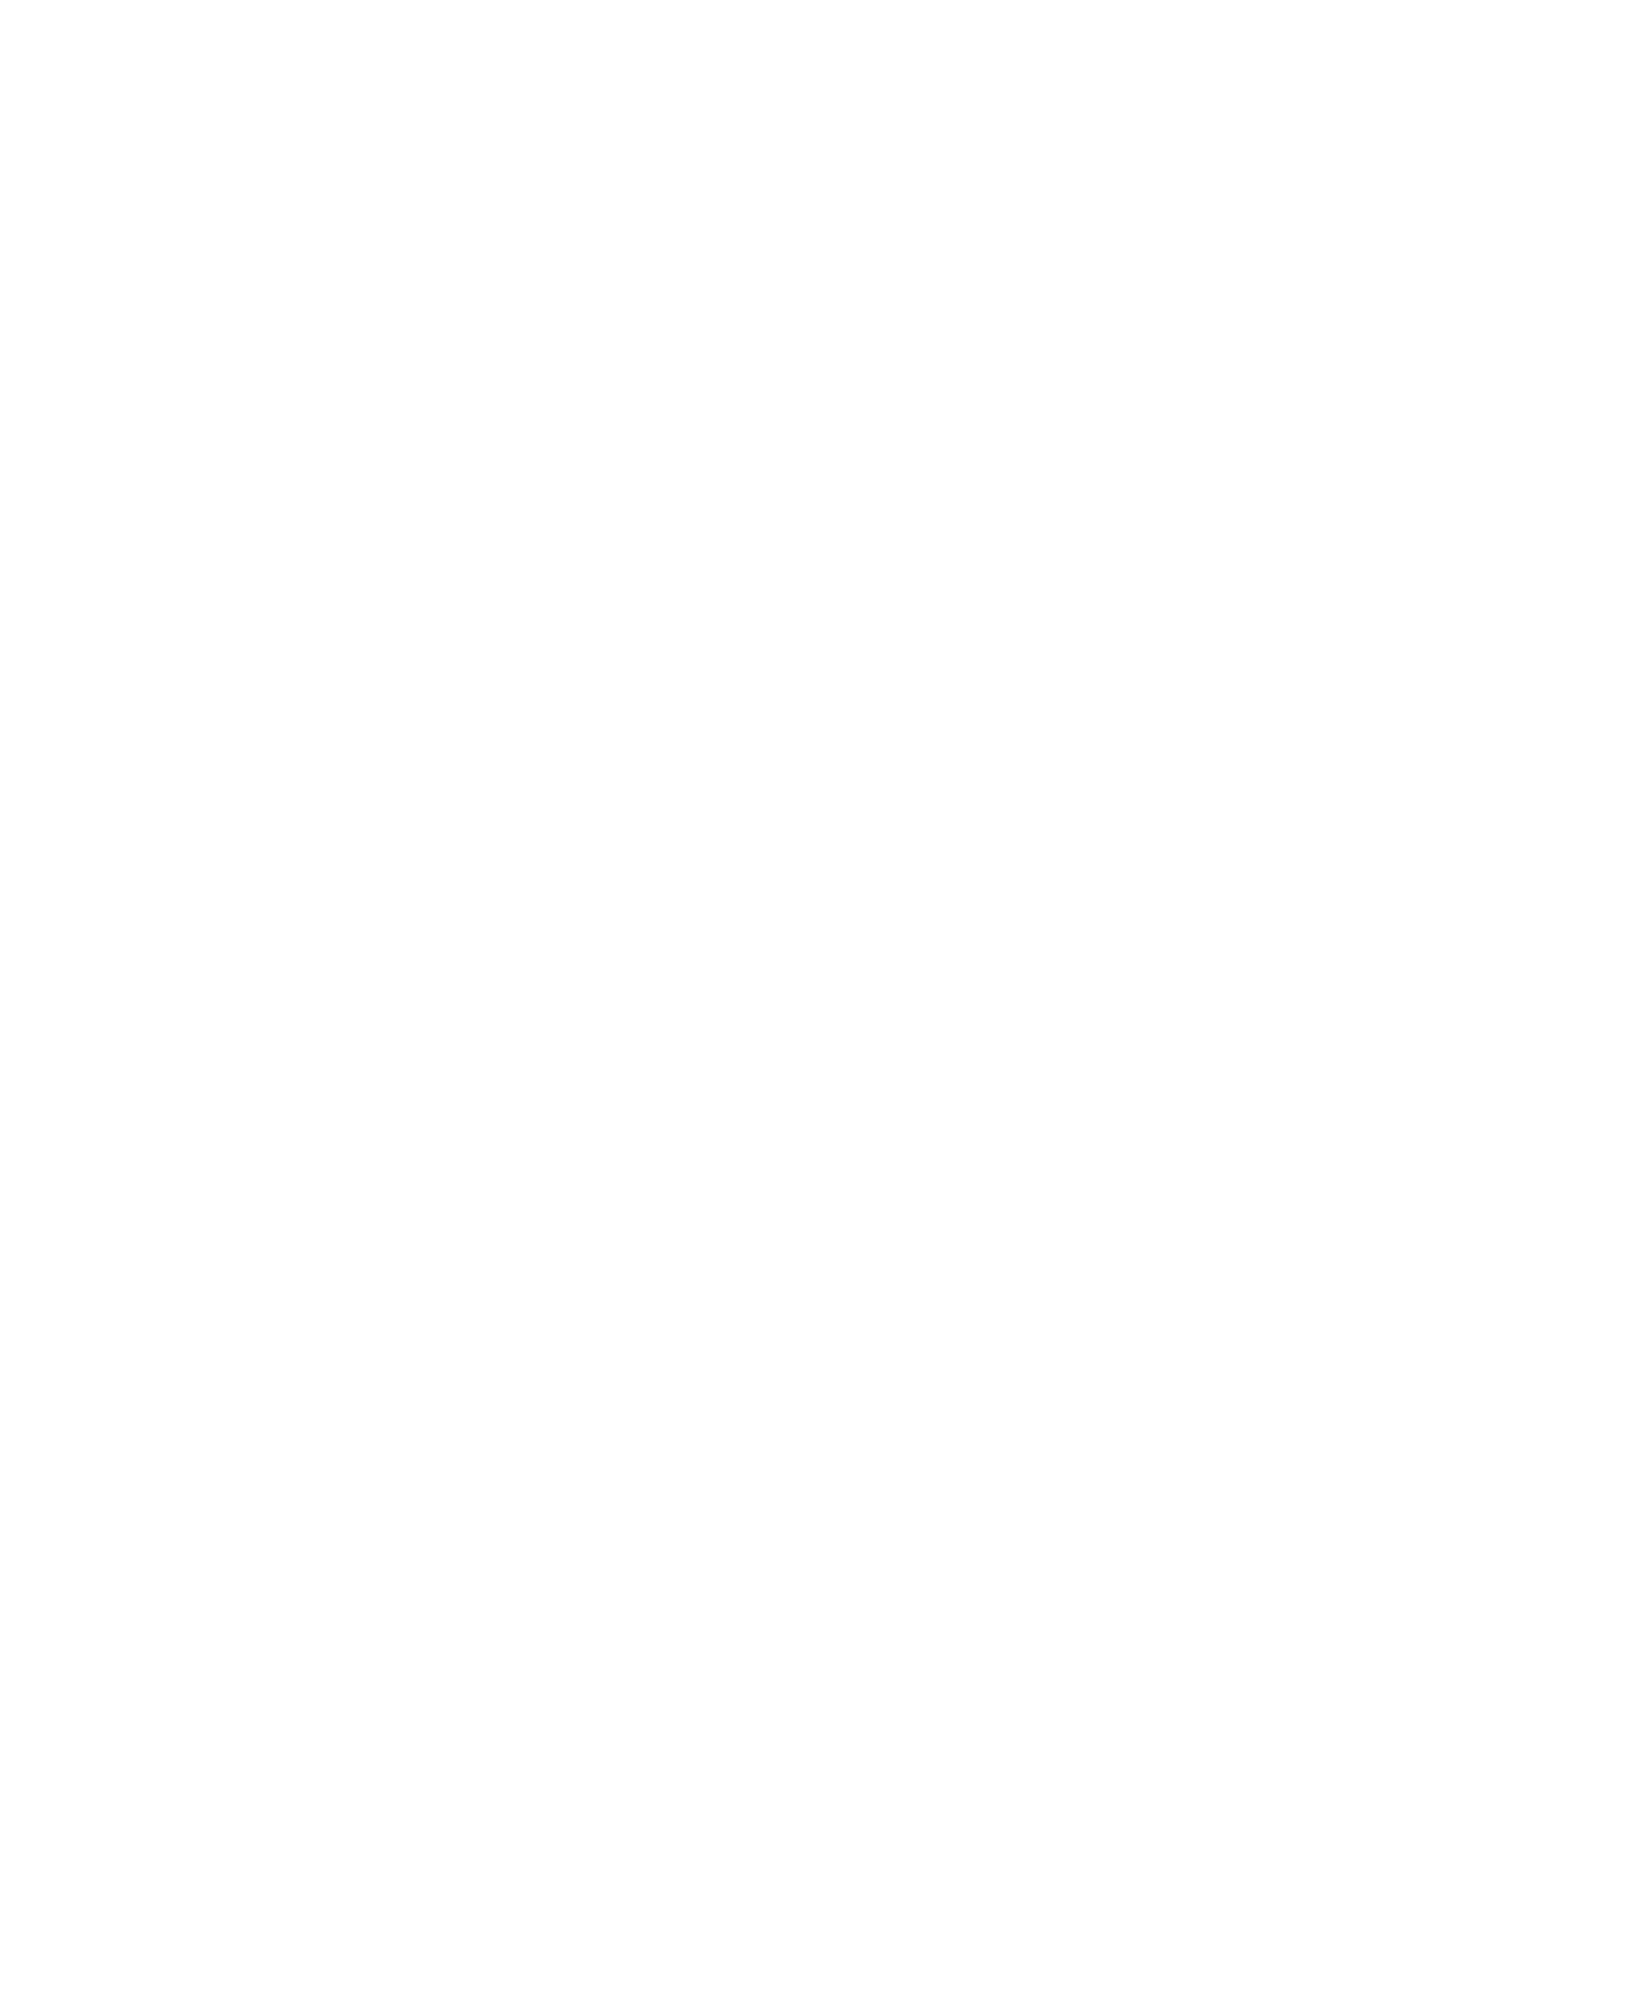 Александра Паперно, "Пространство картины" , 2015, акрил и рисовая бумага на холсте, 200x160